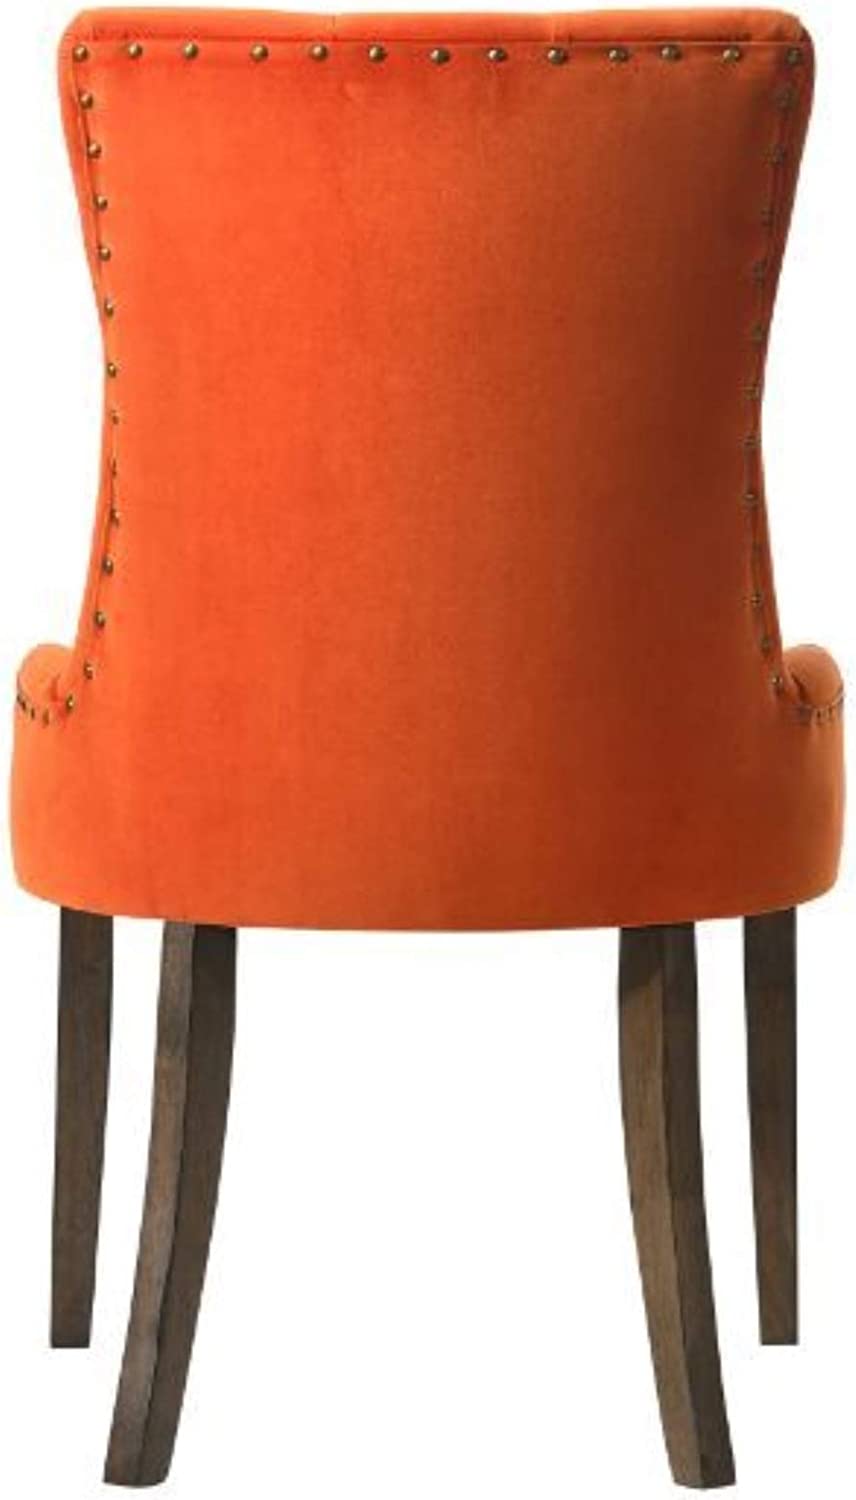 Acme Furniture Farren Side Chair, Beige Fabric &amp; Espresso Finish